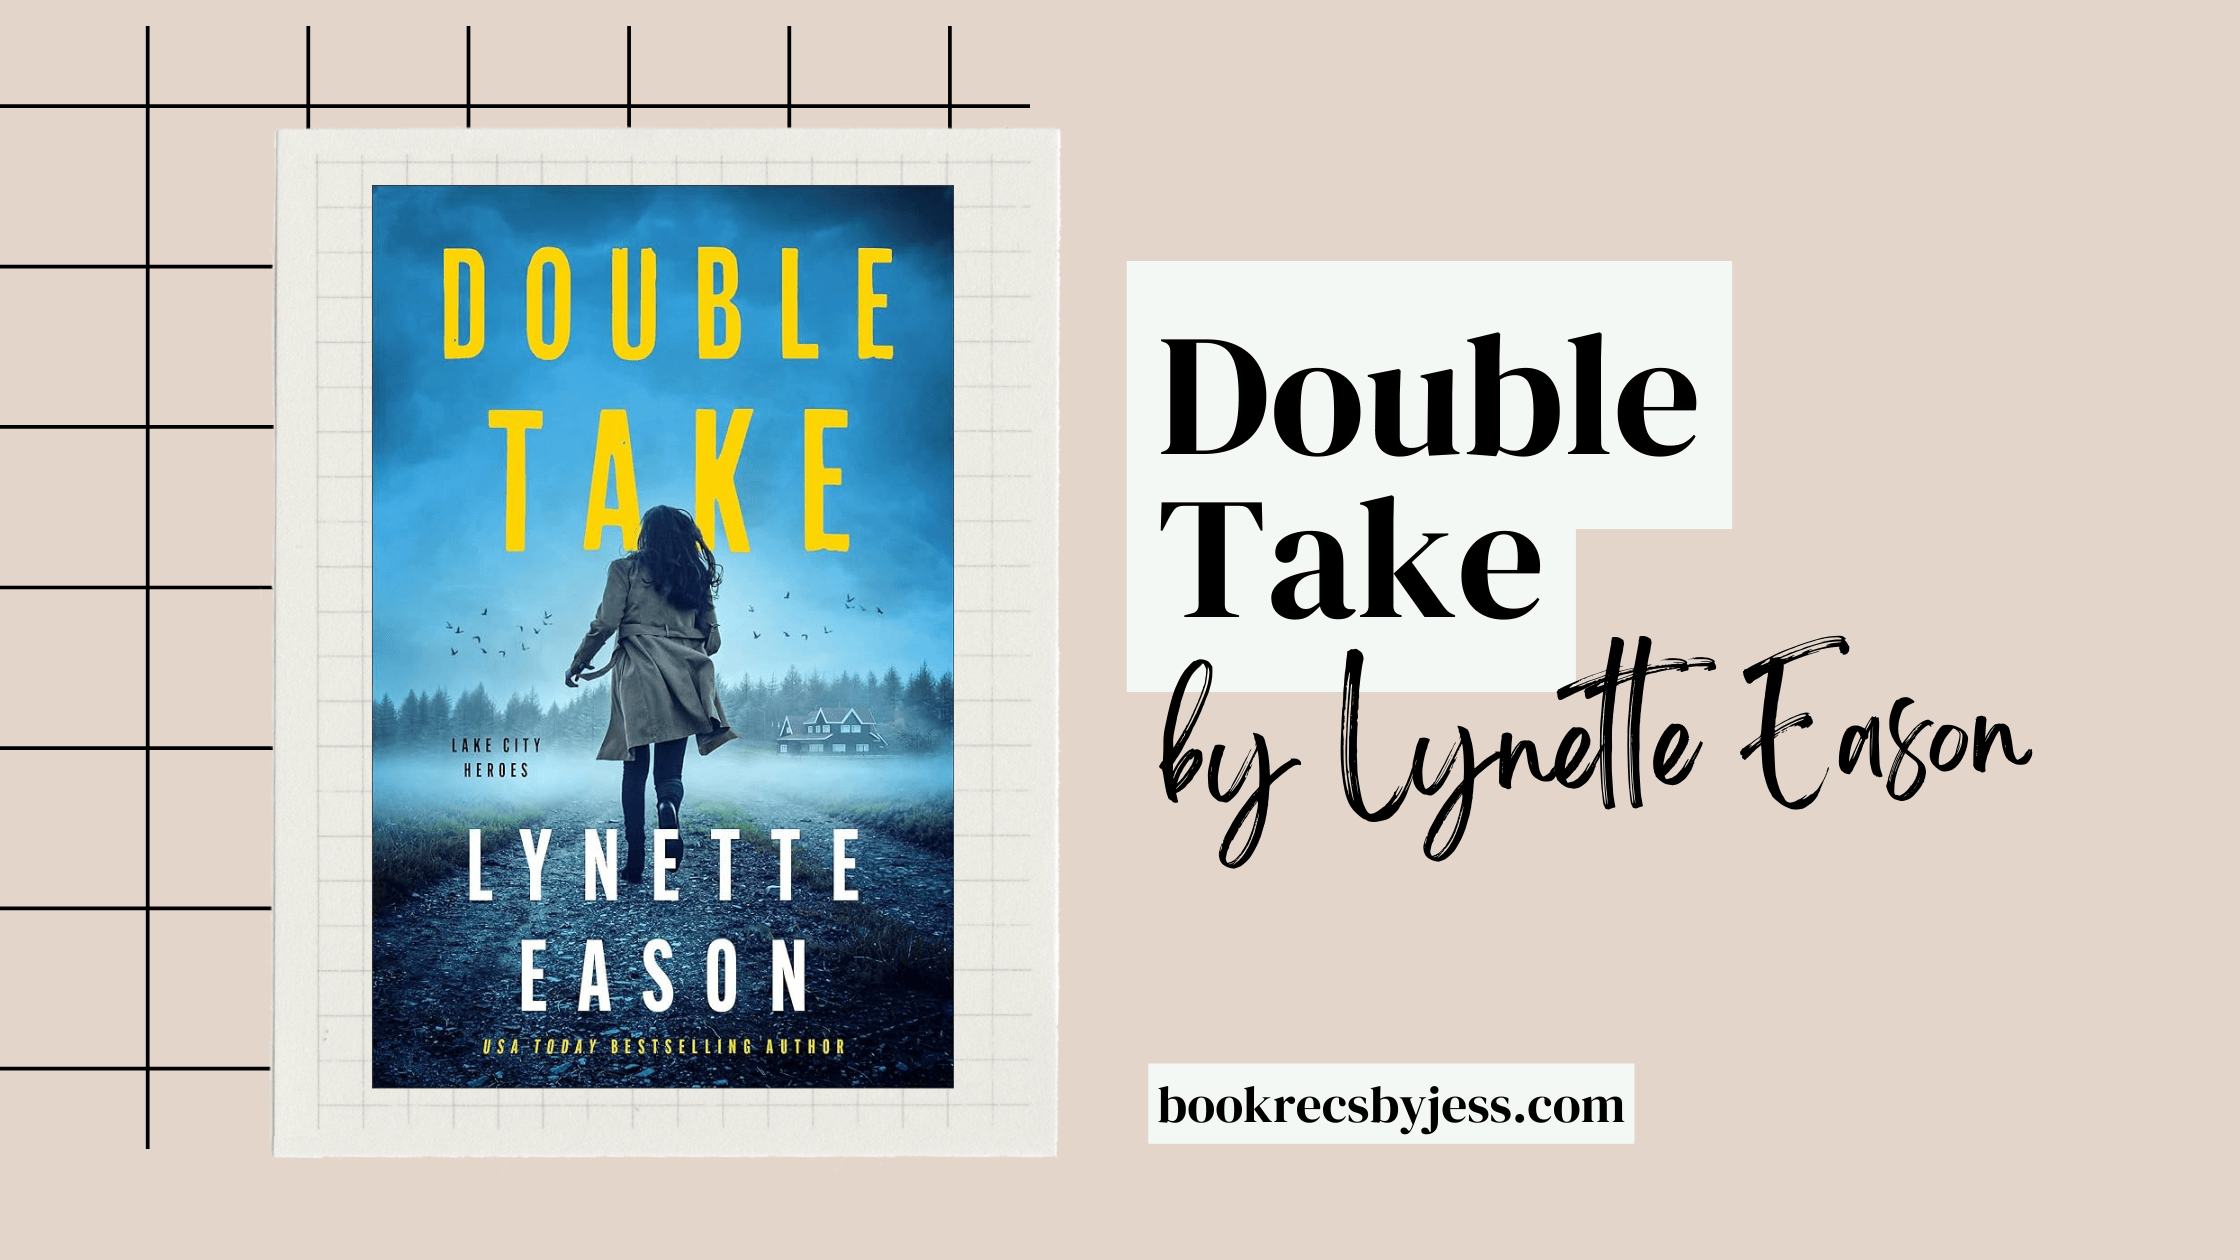 Double Take by Lynette Eason